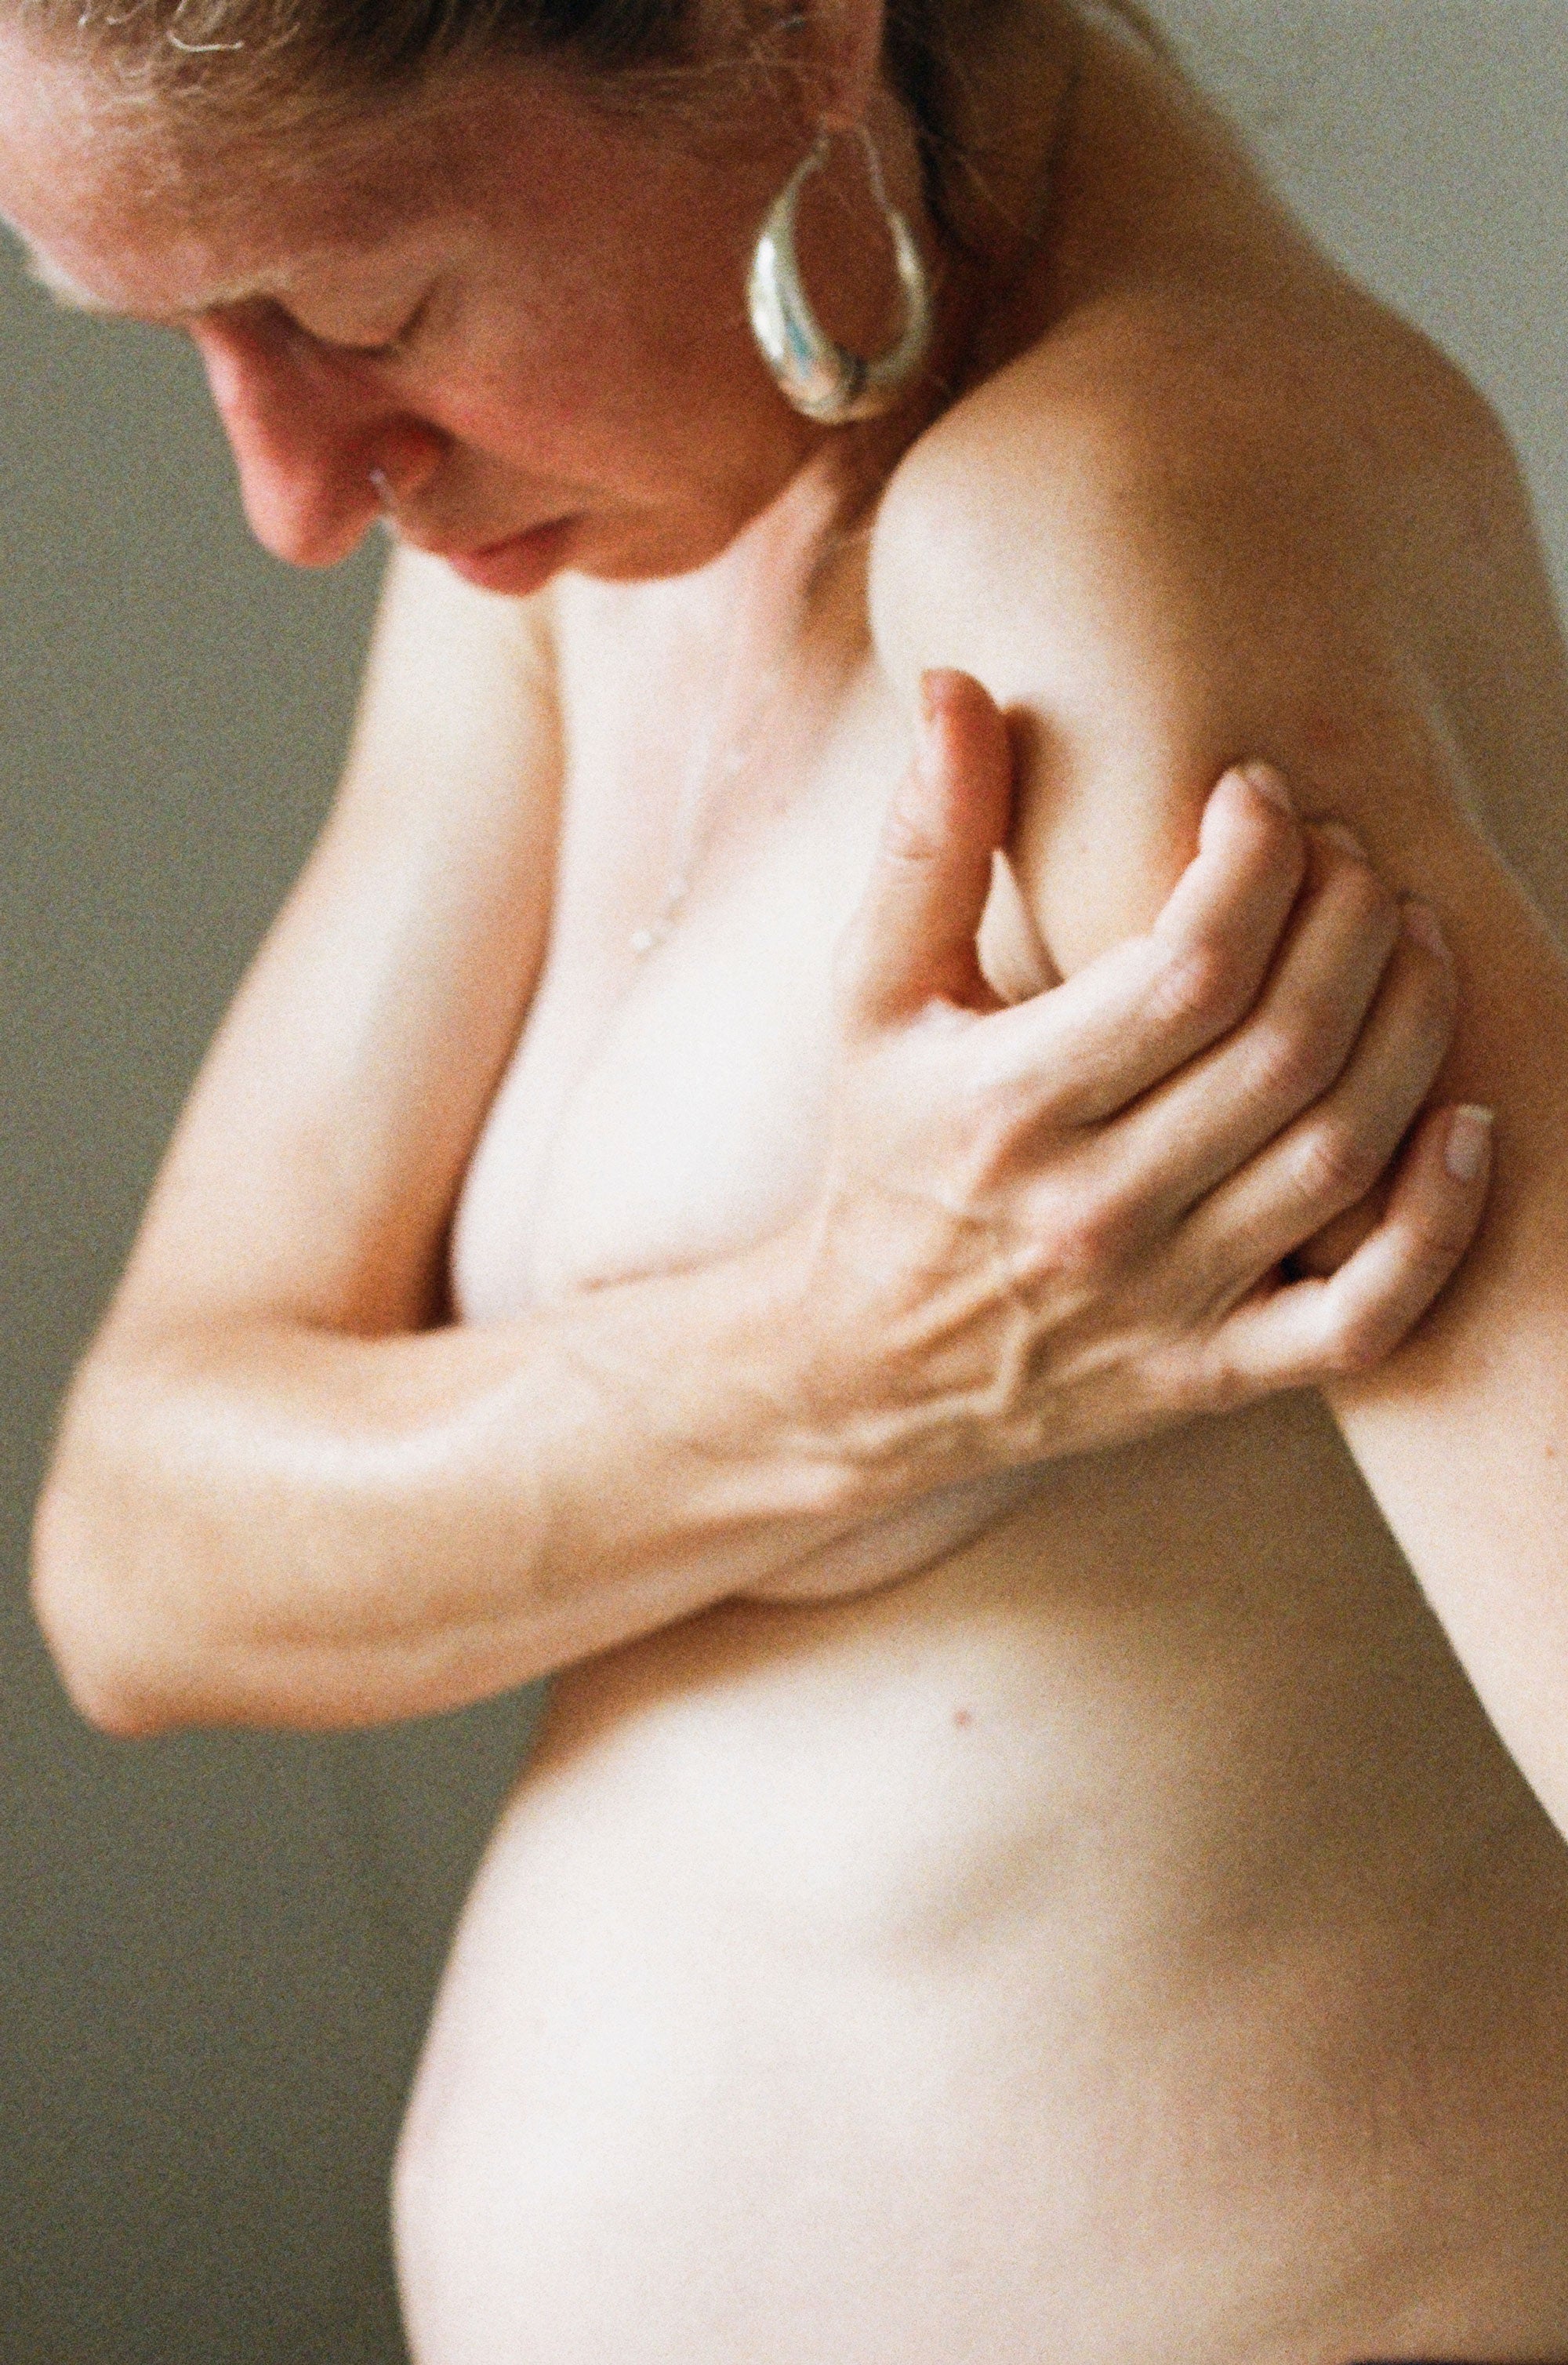 Berührende Fotos einer schwangeren Frau mit Magersucht (NSFW)